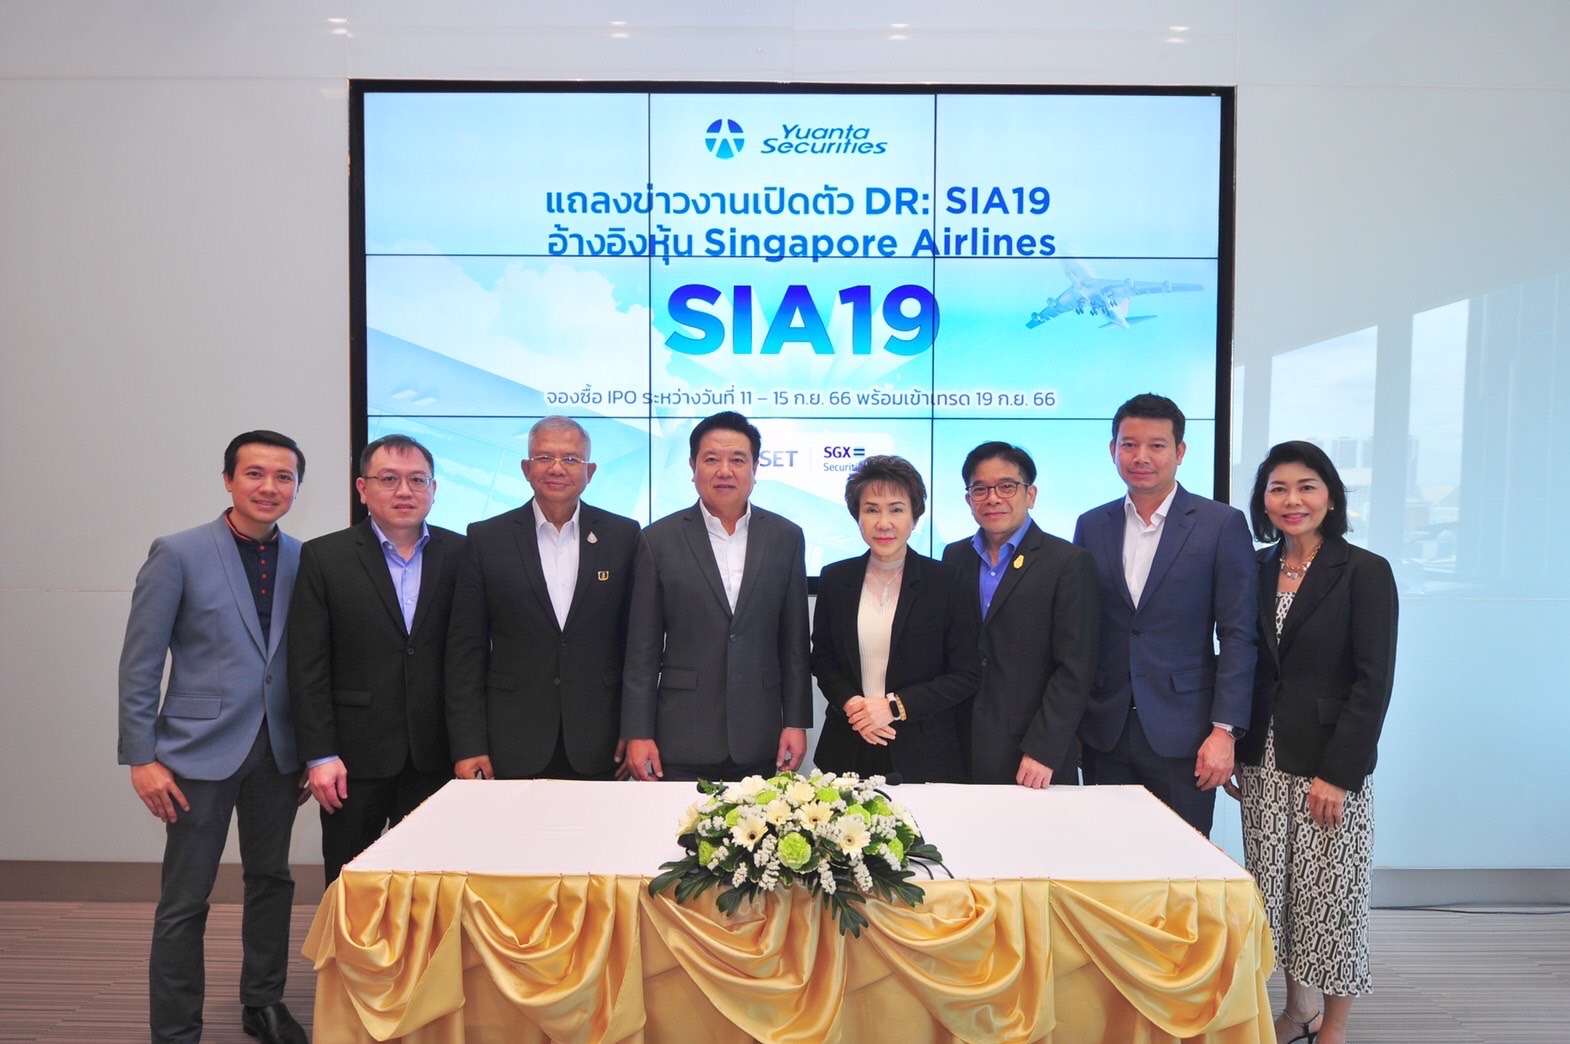 บล.หยวนต้าฯ เปิดตัว “DR:SIA19”  อ้างอิงหุ้น Singapore Airlines สายการบินที่ดีที่สุดในโลก